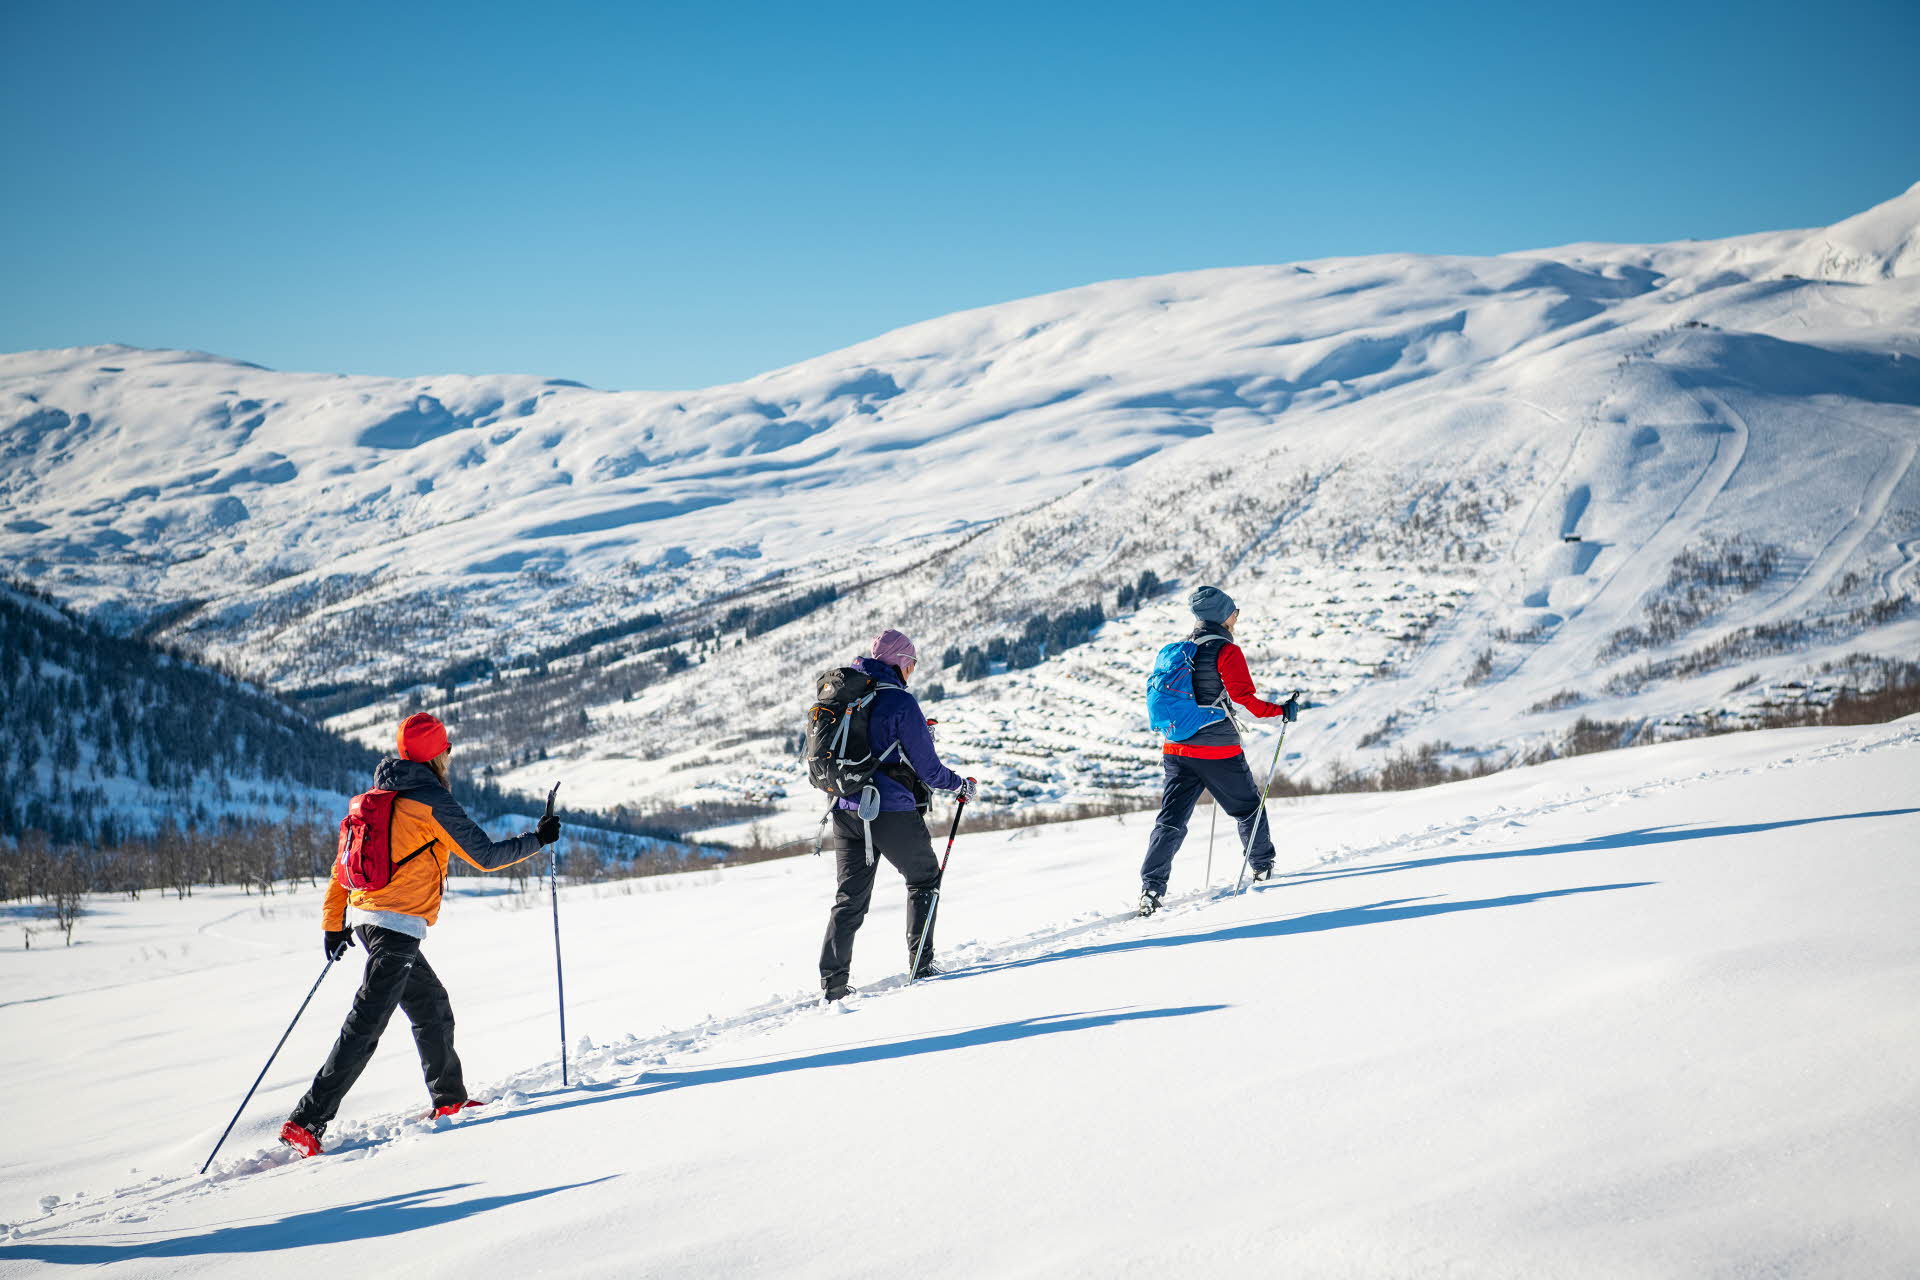 三个人排成直线在野外滑雪，背景里是迈克达林山度假区 (Myrkdalen Mountain Resort) 。